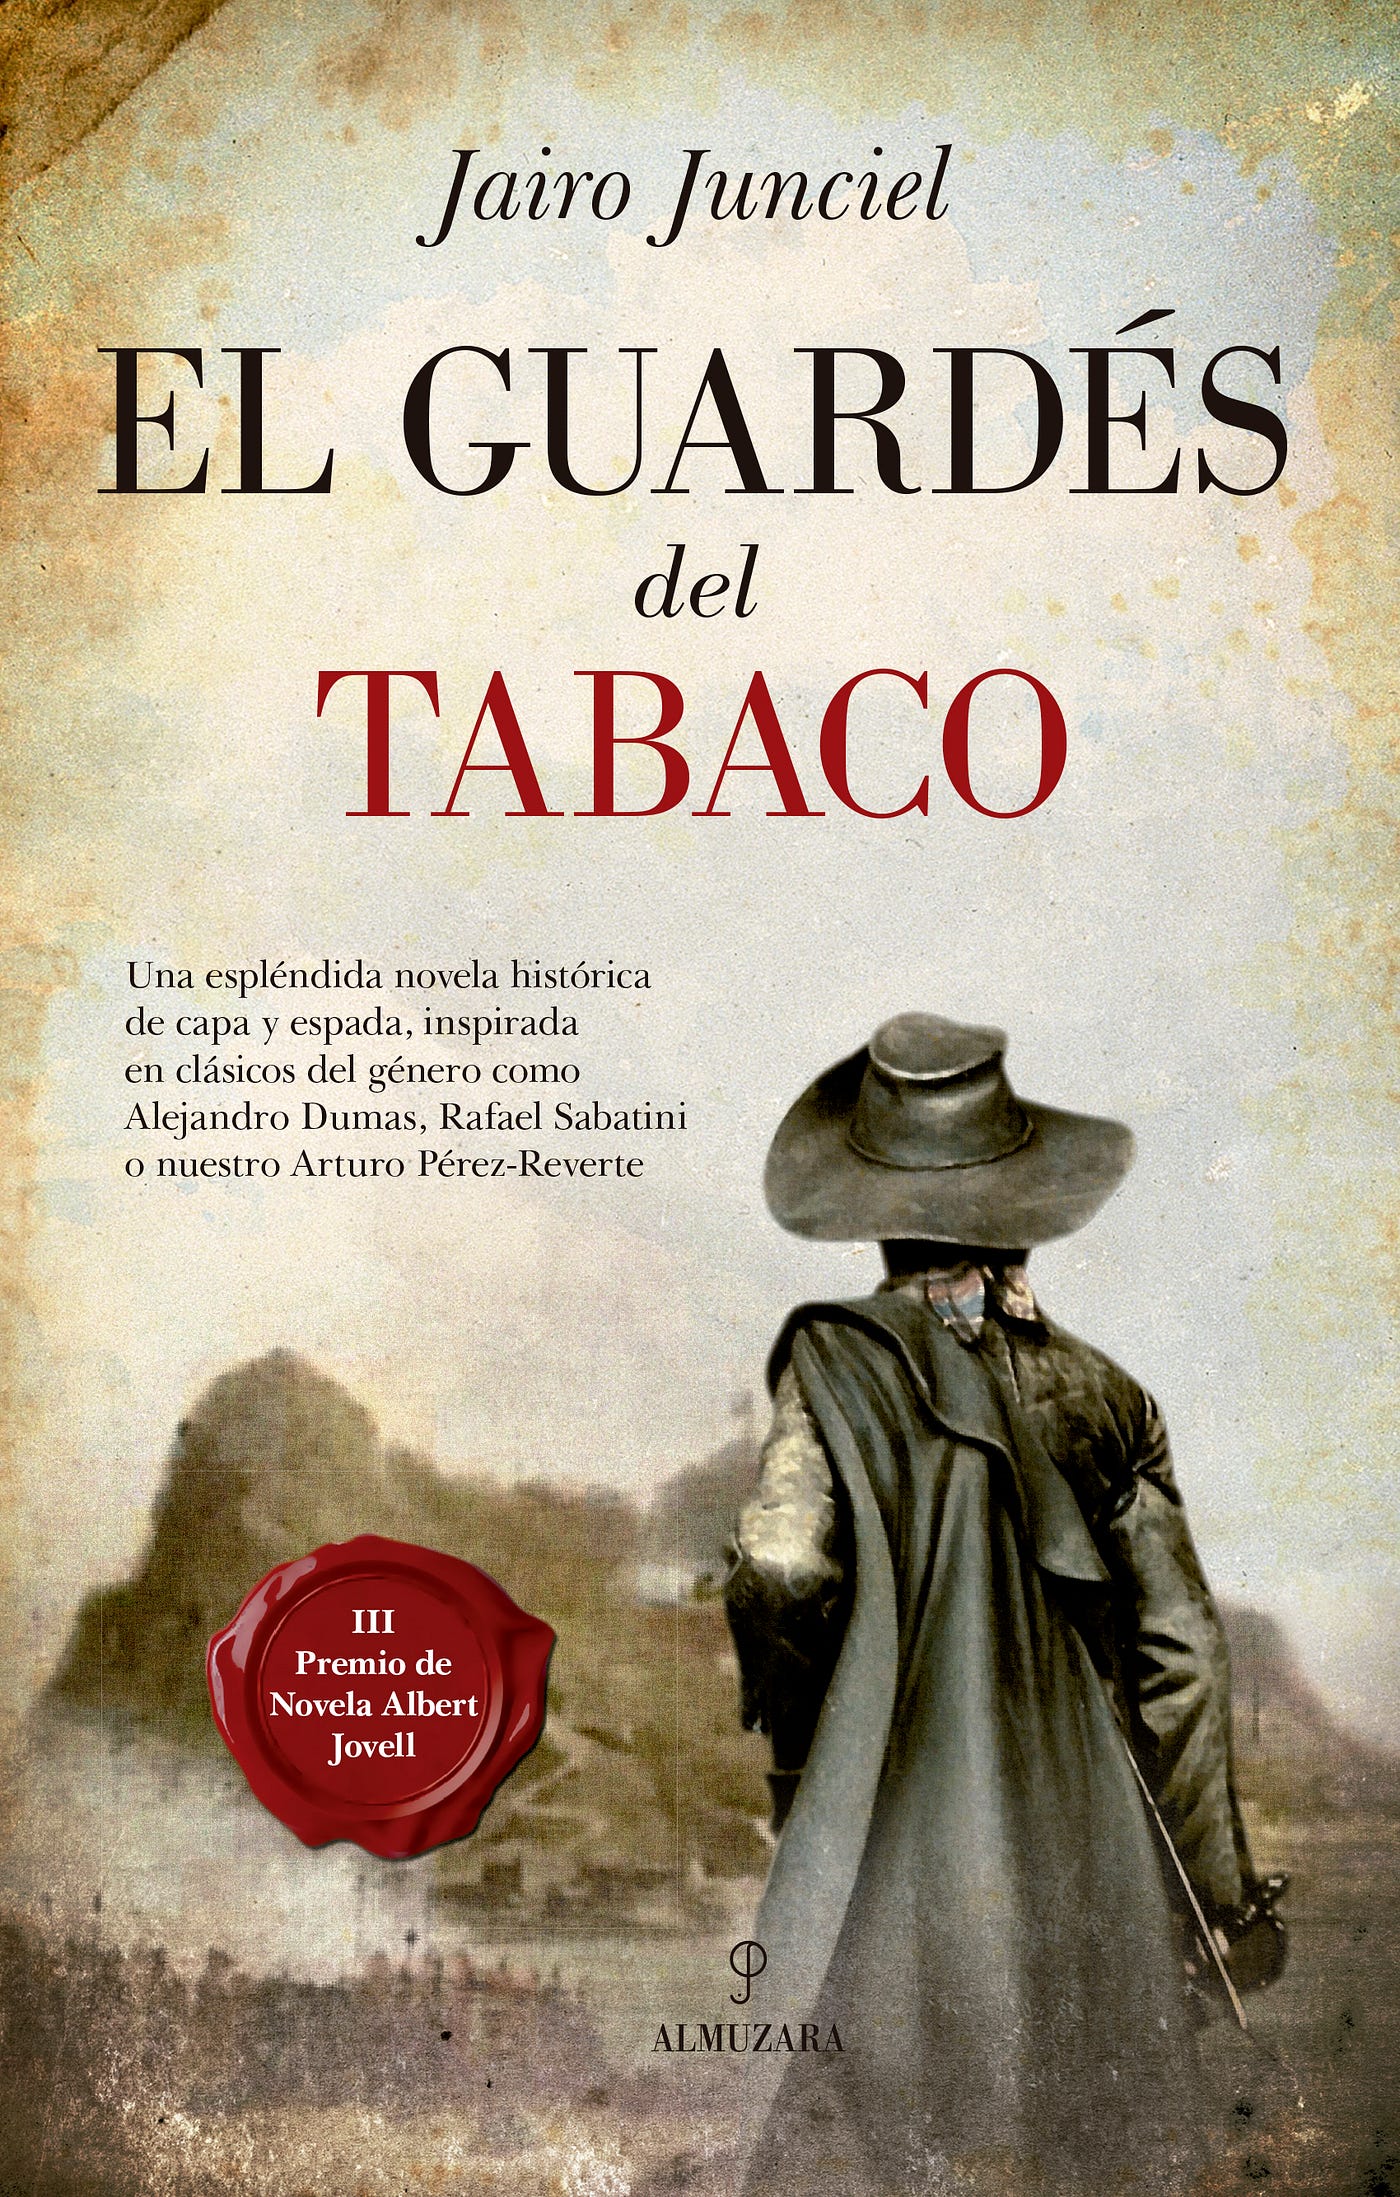 El guardés del tabaco', de Jairo Junciel: aventuras de capa y espada | by  Josep Oliver | Papel en Blanco